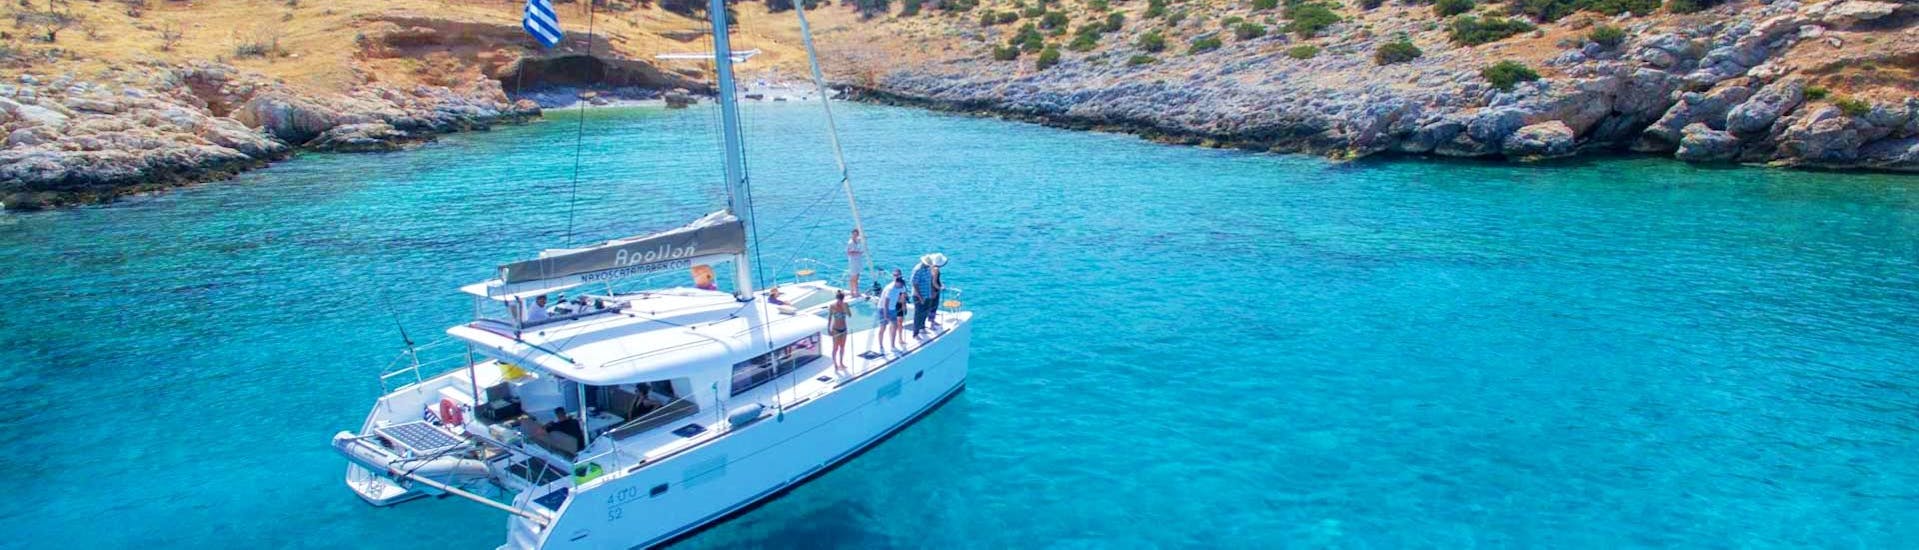 Il catamarano Apollon di Naxos Catamaran naviga lungo la costa rocciosa delle Cicladi durante la Crociera privata a vela su un catamarano di lusso da Naxos.